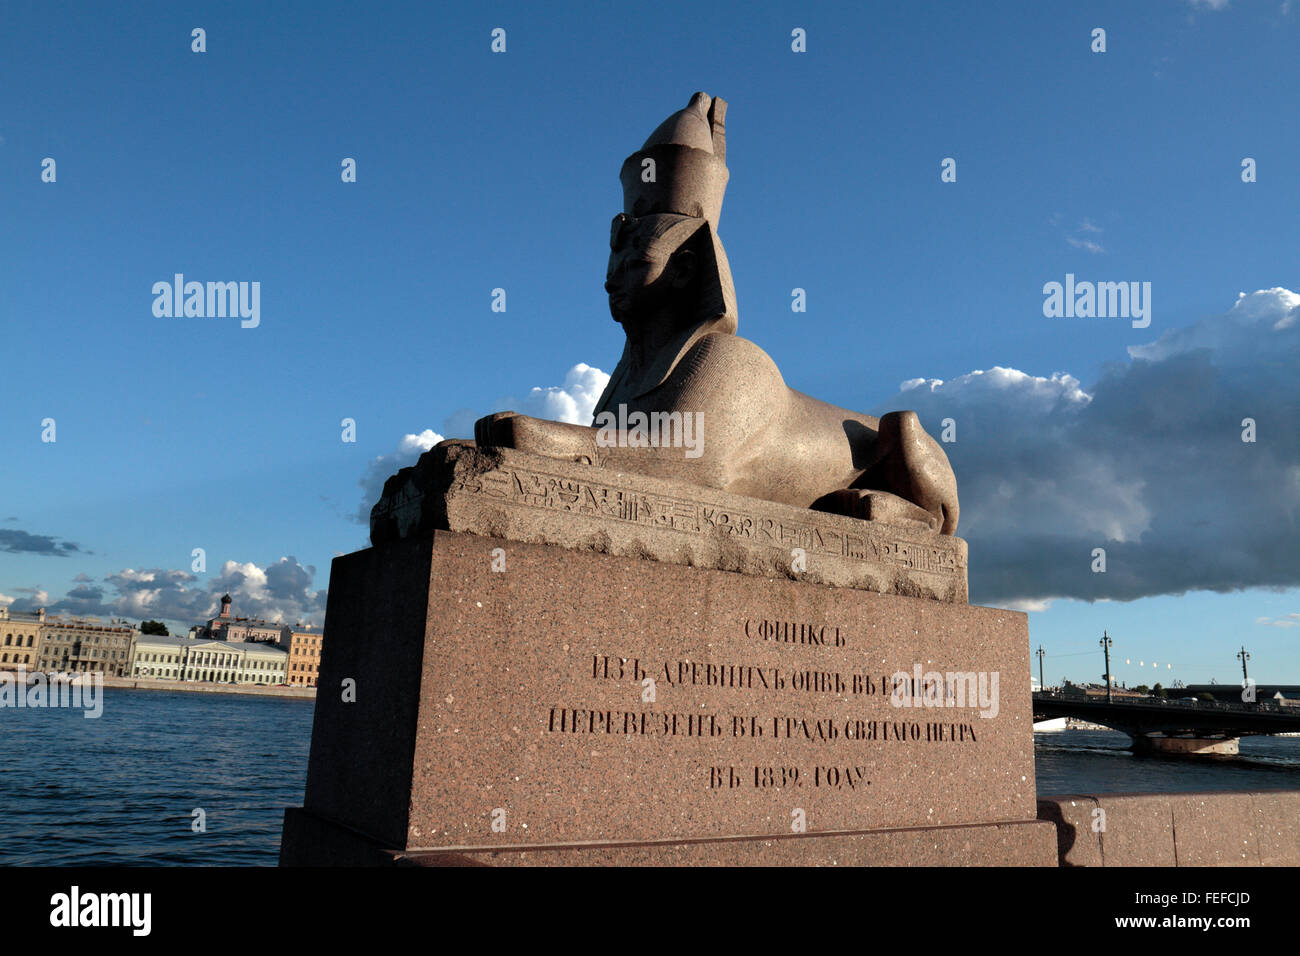 Eines der zwei ägyptische Sphinx auf Unversitetskaya Naberezhnaya (University Embankment) in St. Petersburg, Russland. Stockfoto